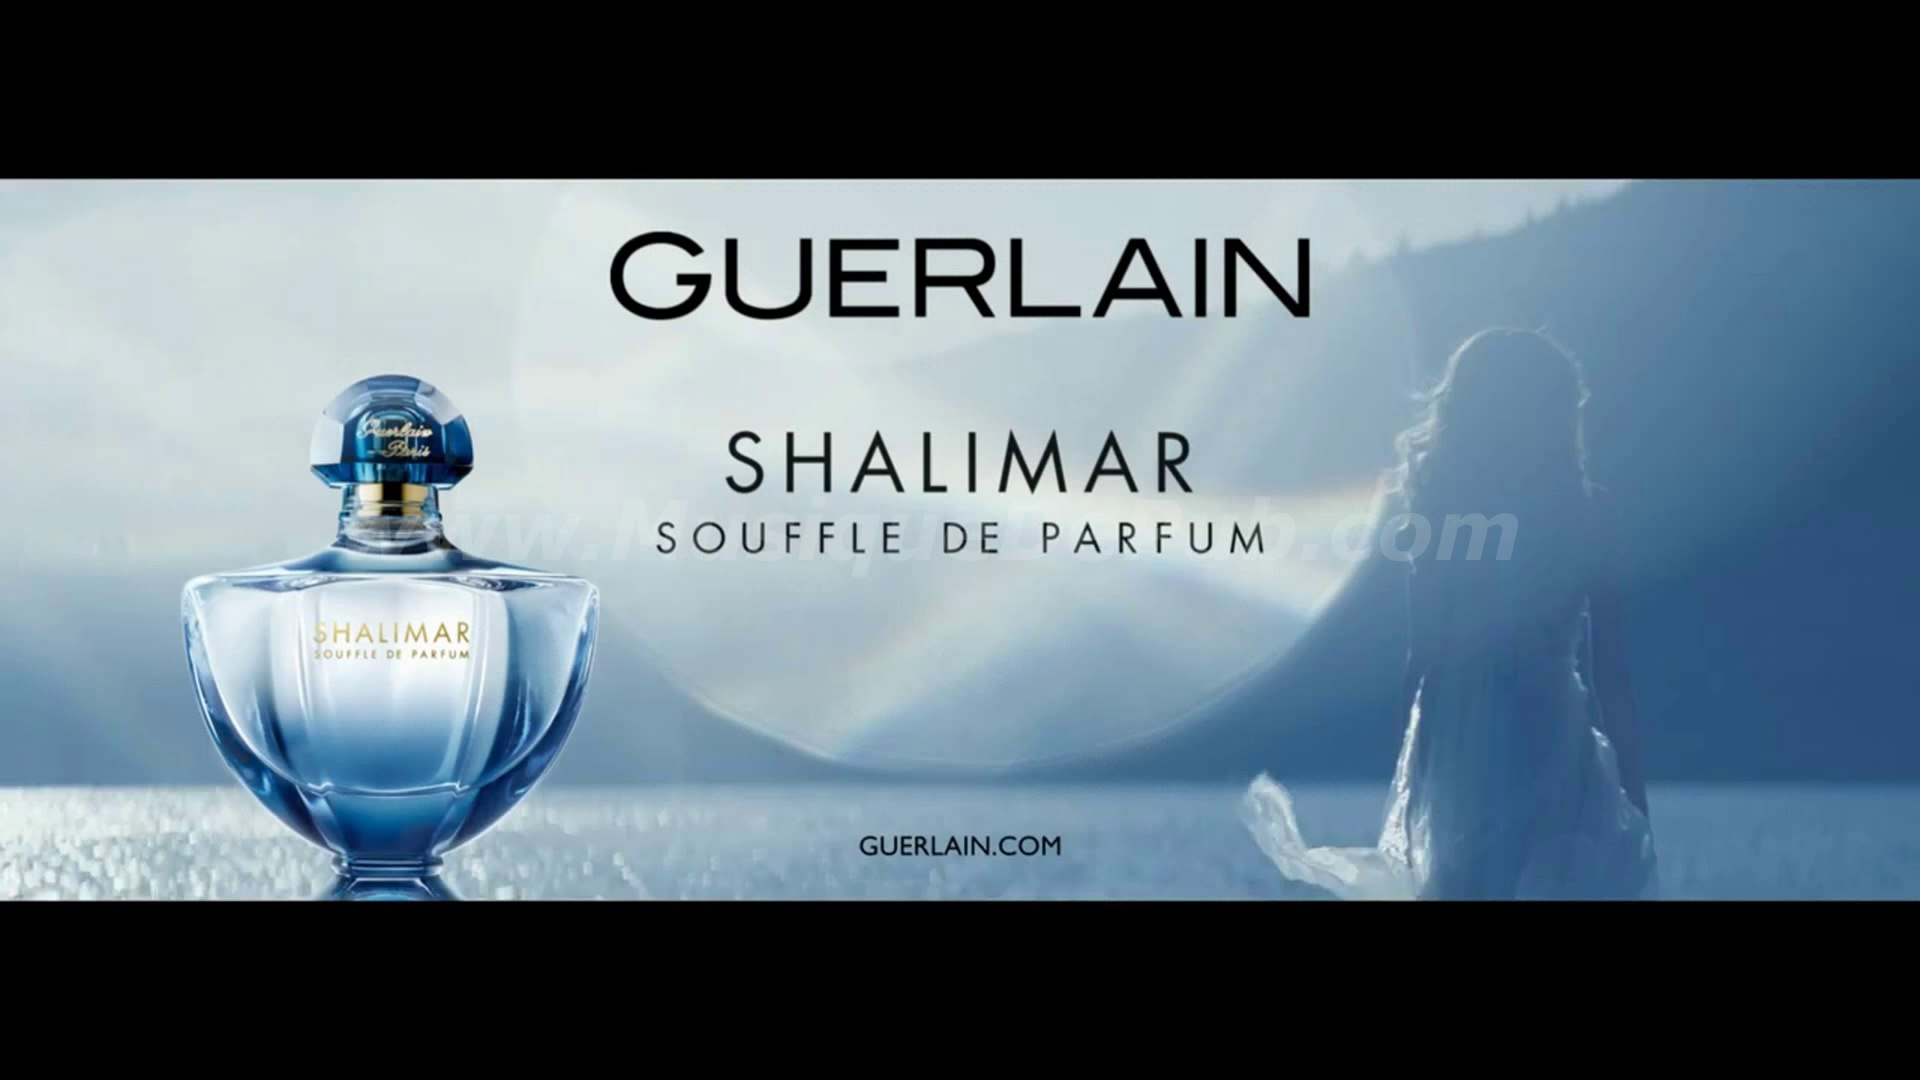 pub Guerlain Shalimar Souffle de Parfum 2014 [HQ] - Vidéo Dailymotion